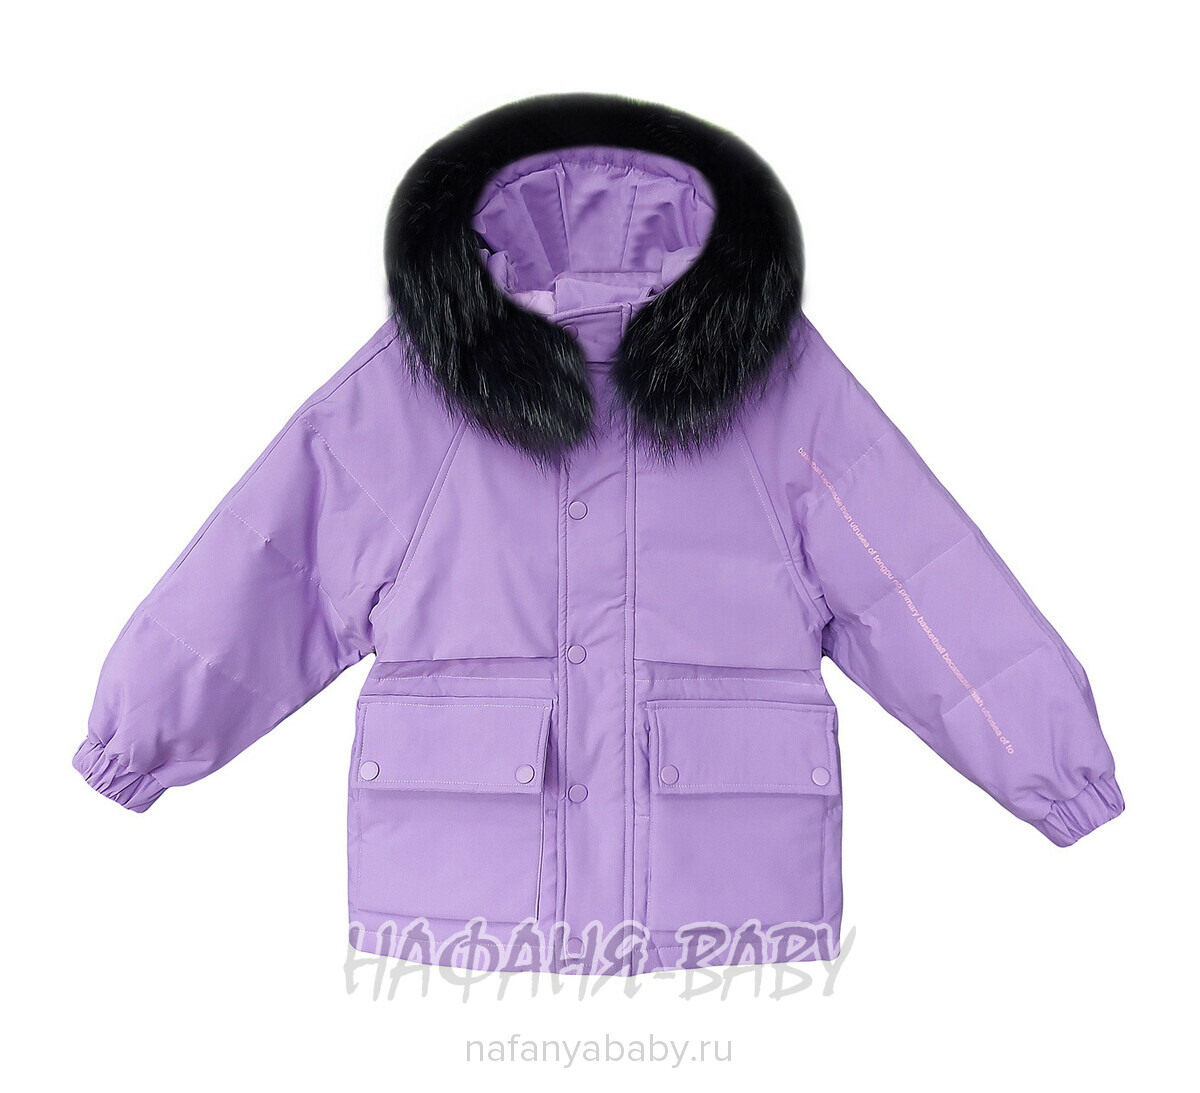 Детская зимняя куртка-пуховик MAY JM арт: 9219, 10-15 лет, оптом Китай (Пекин)